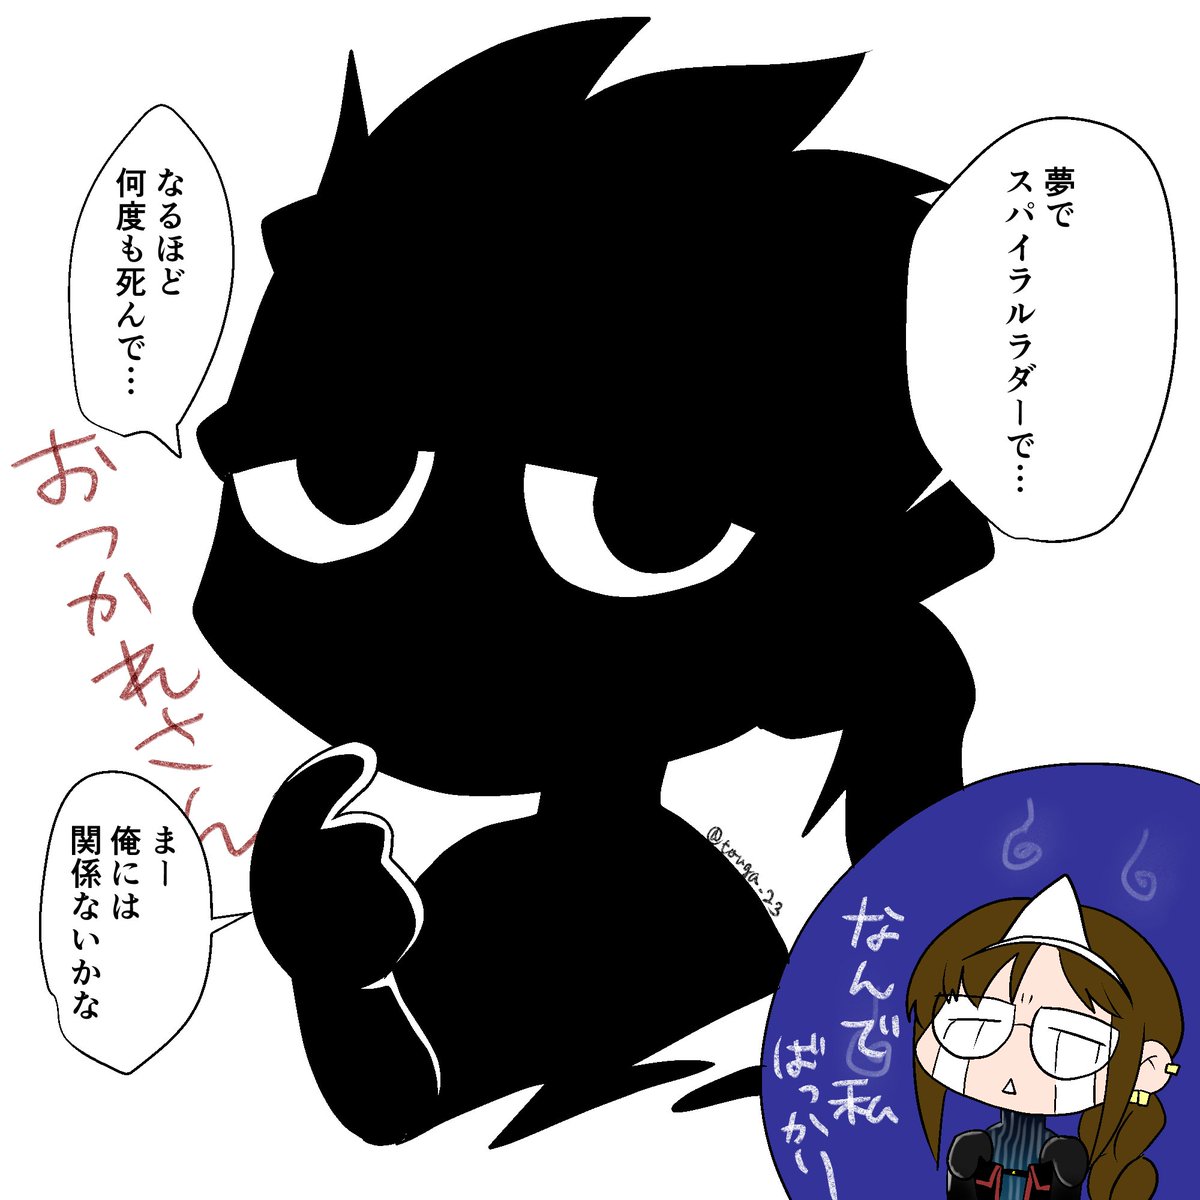 Fgo しゅぎょうのみち 漫画 Fate Grandorder 千子村正 Fgo かのつくアレ アンリマユ中心web主催の漫画